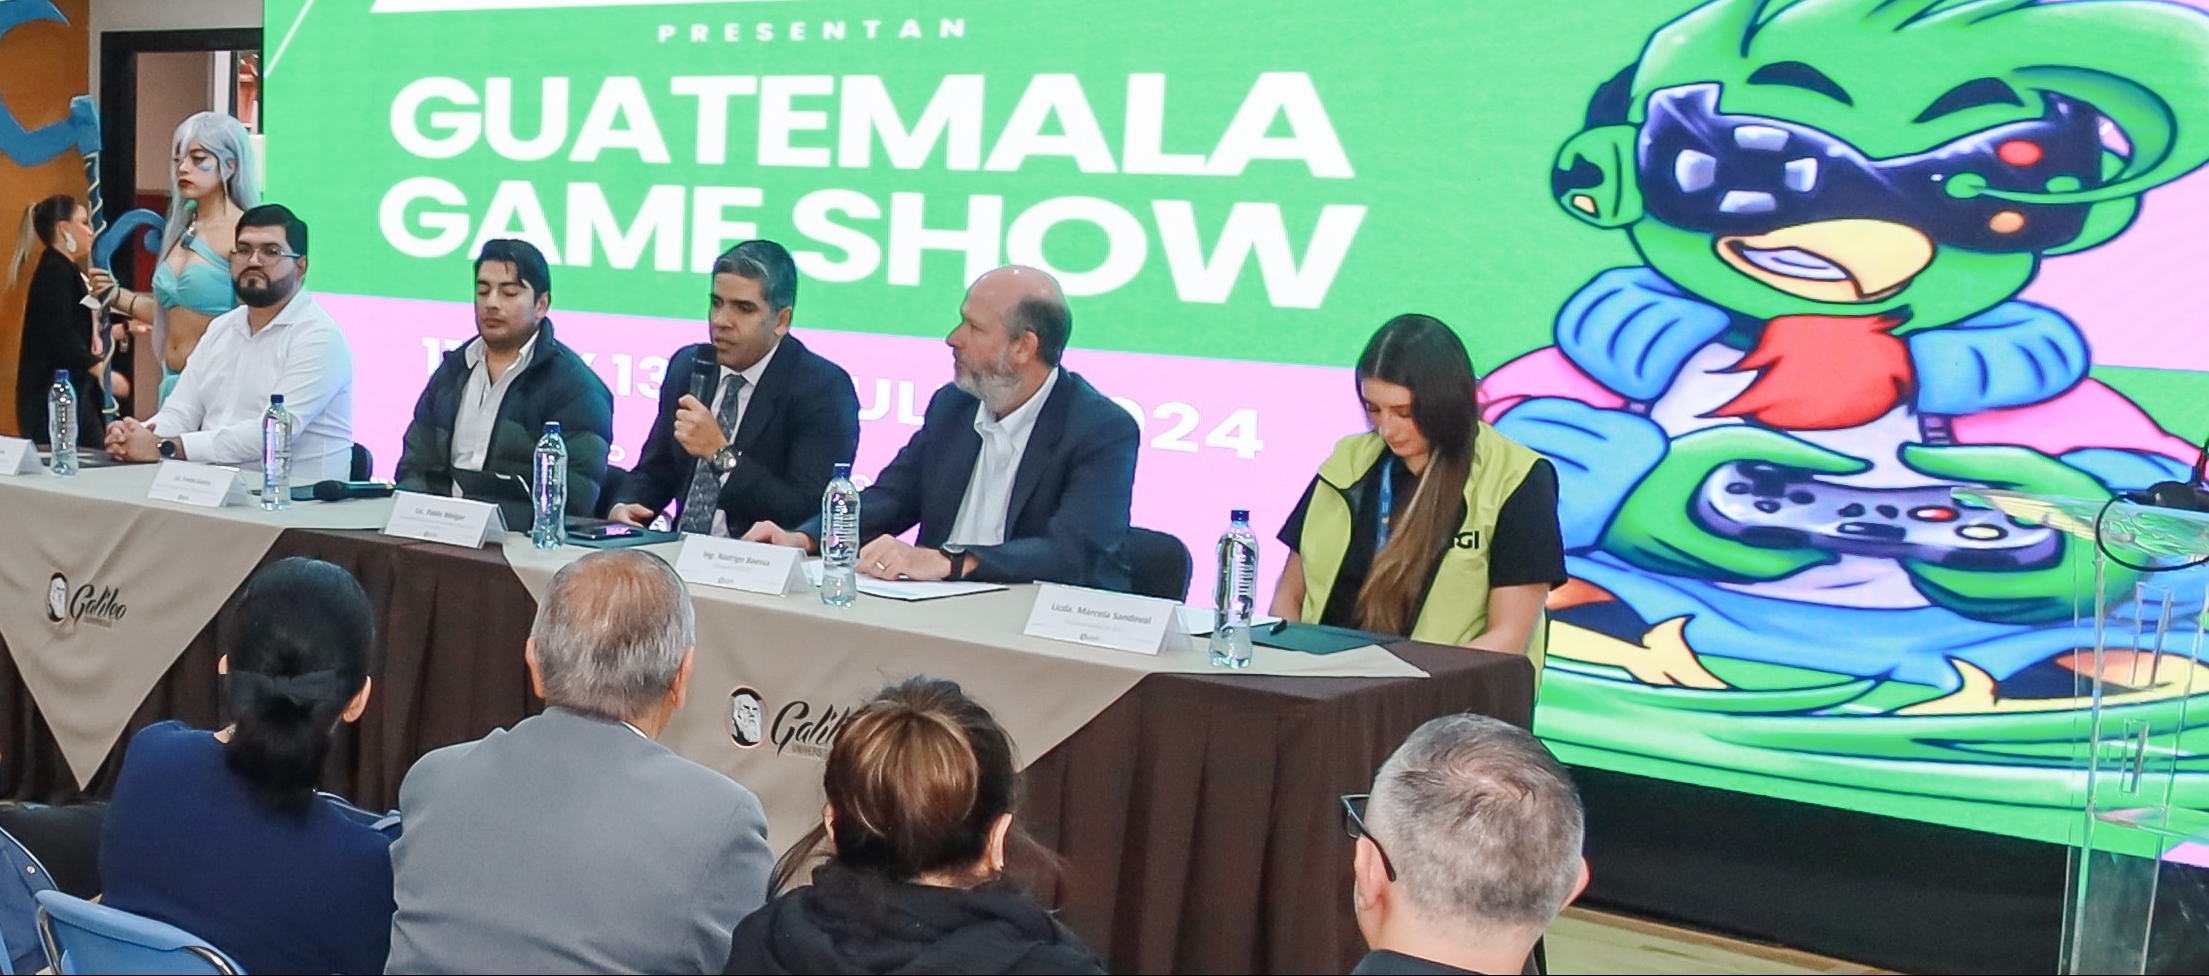 uatemala Game Show 2: El evento de videojuegos más importante del año